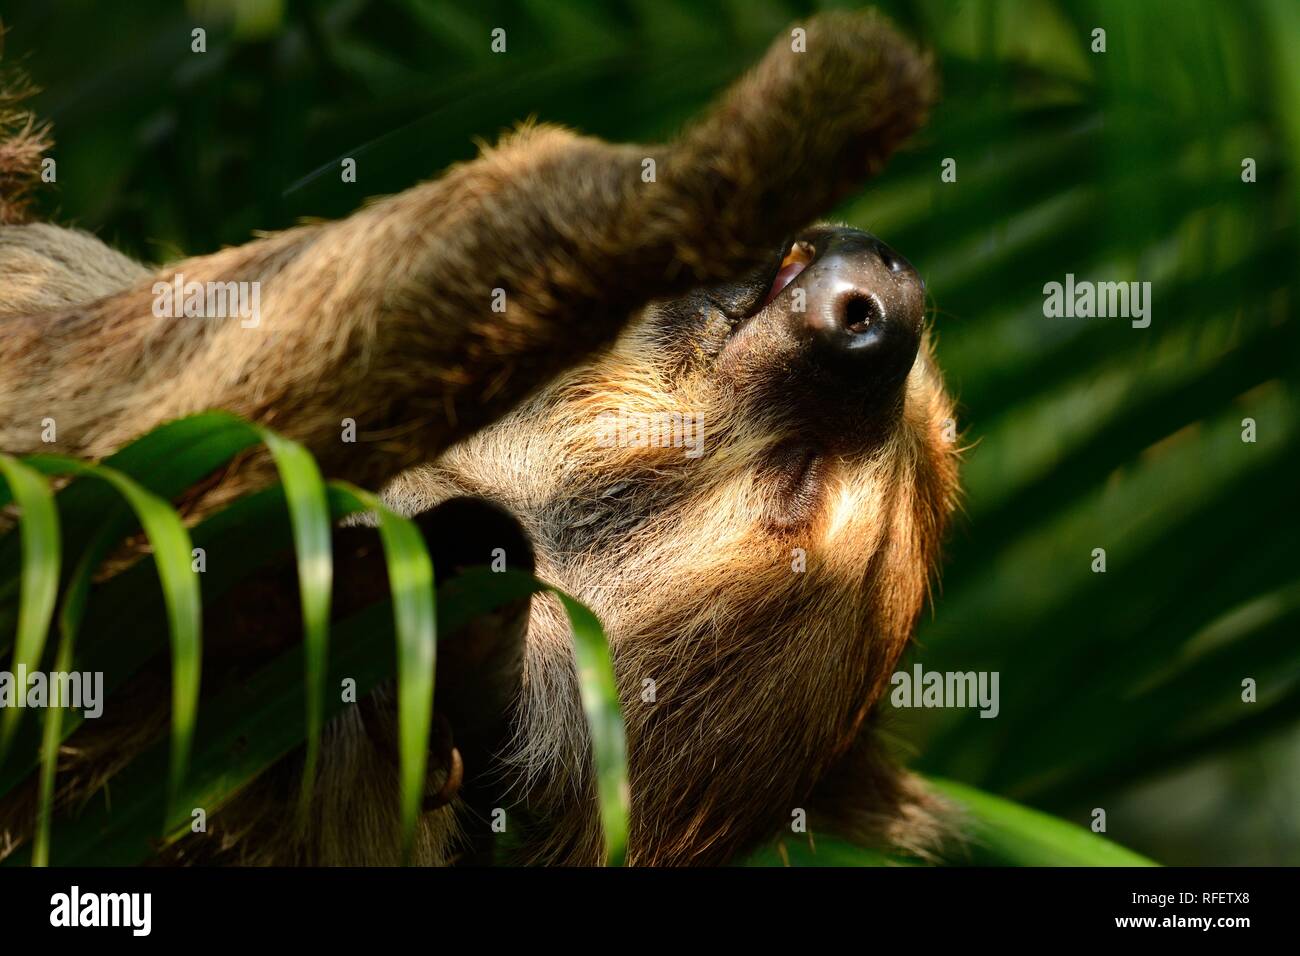 Schlafen schönen Zwei-toed sloths (Choloepus hoffmanni) in einem thailändischen Zoo Stockfoto